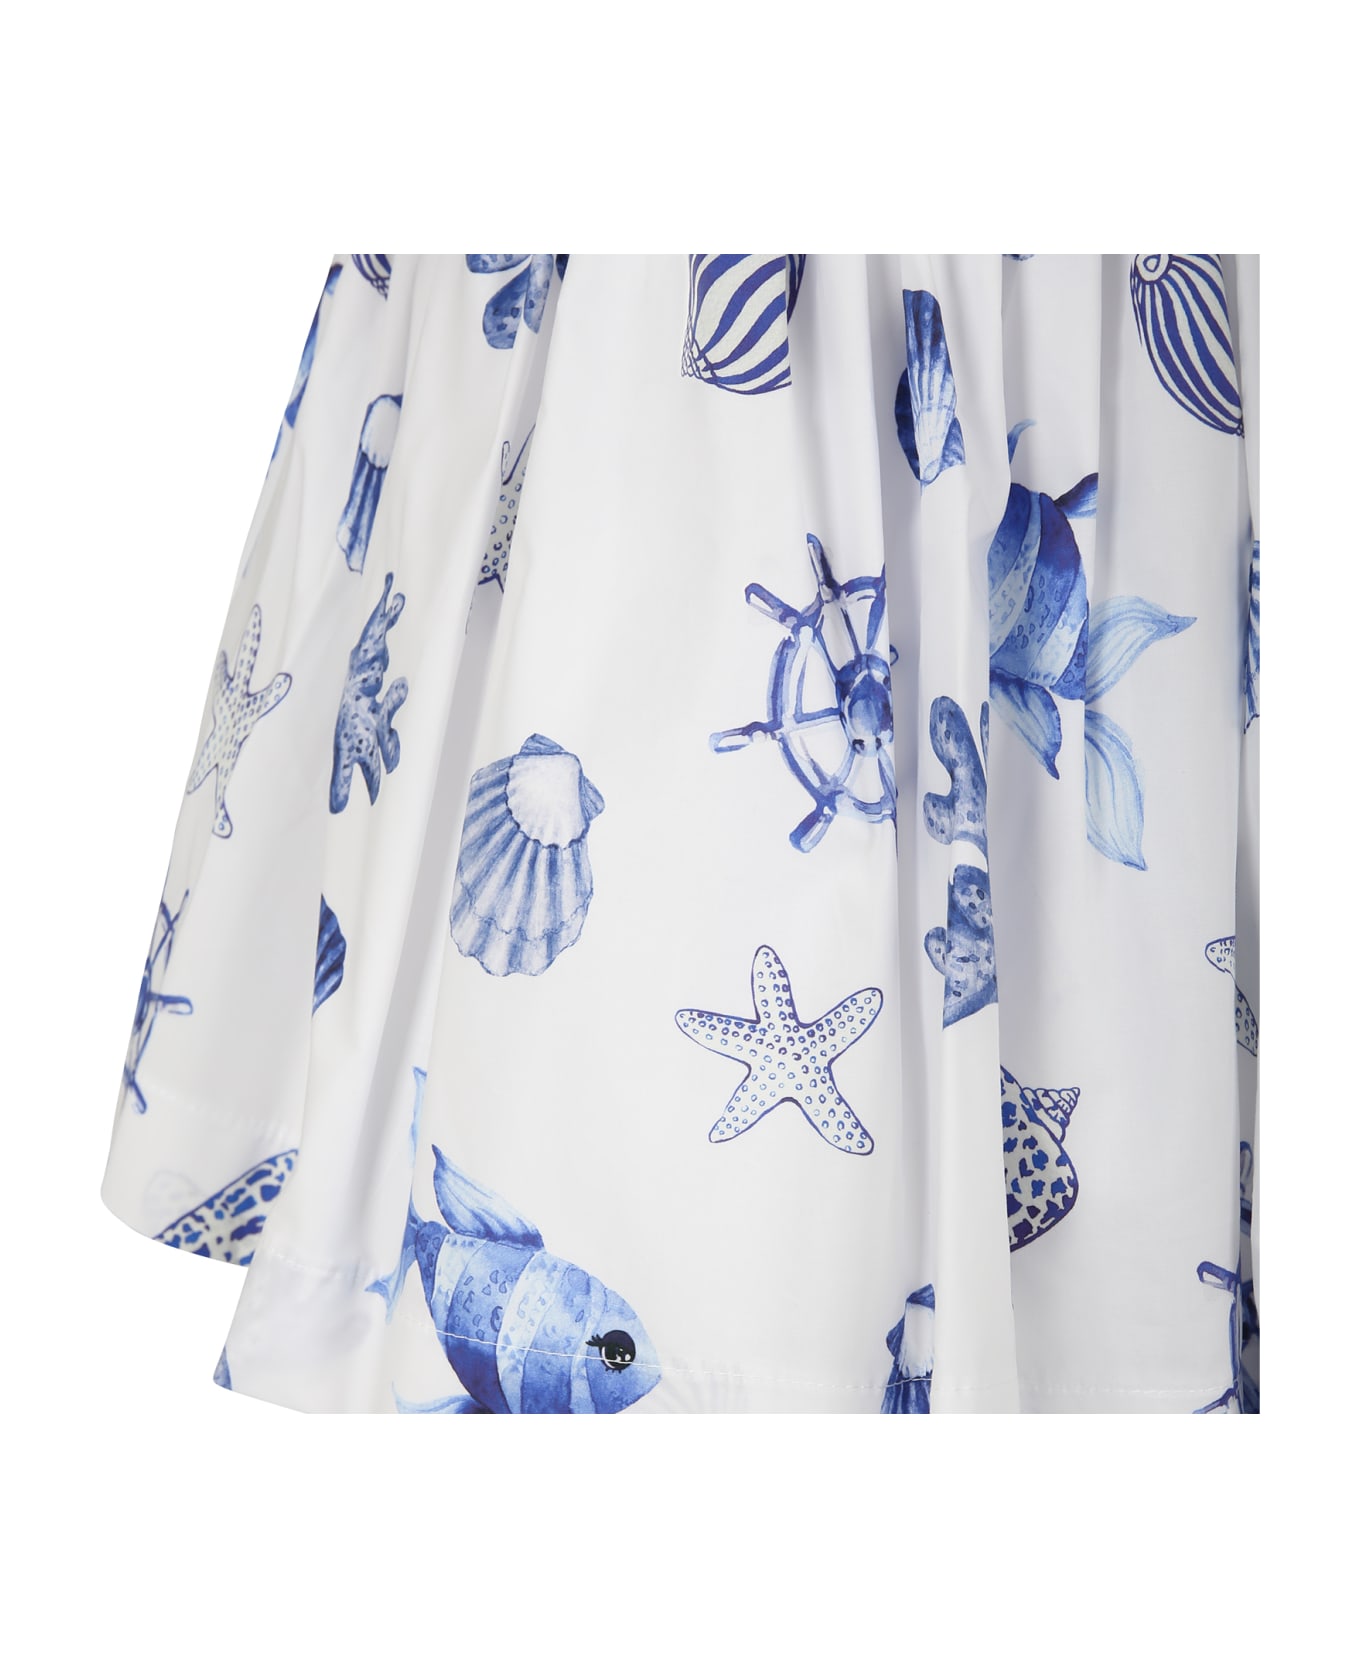 Monnalisa White Skirt For Girl With Shells Print - White